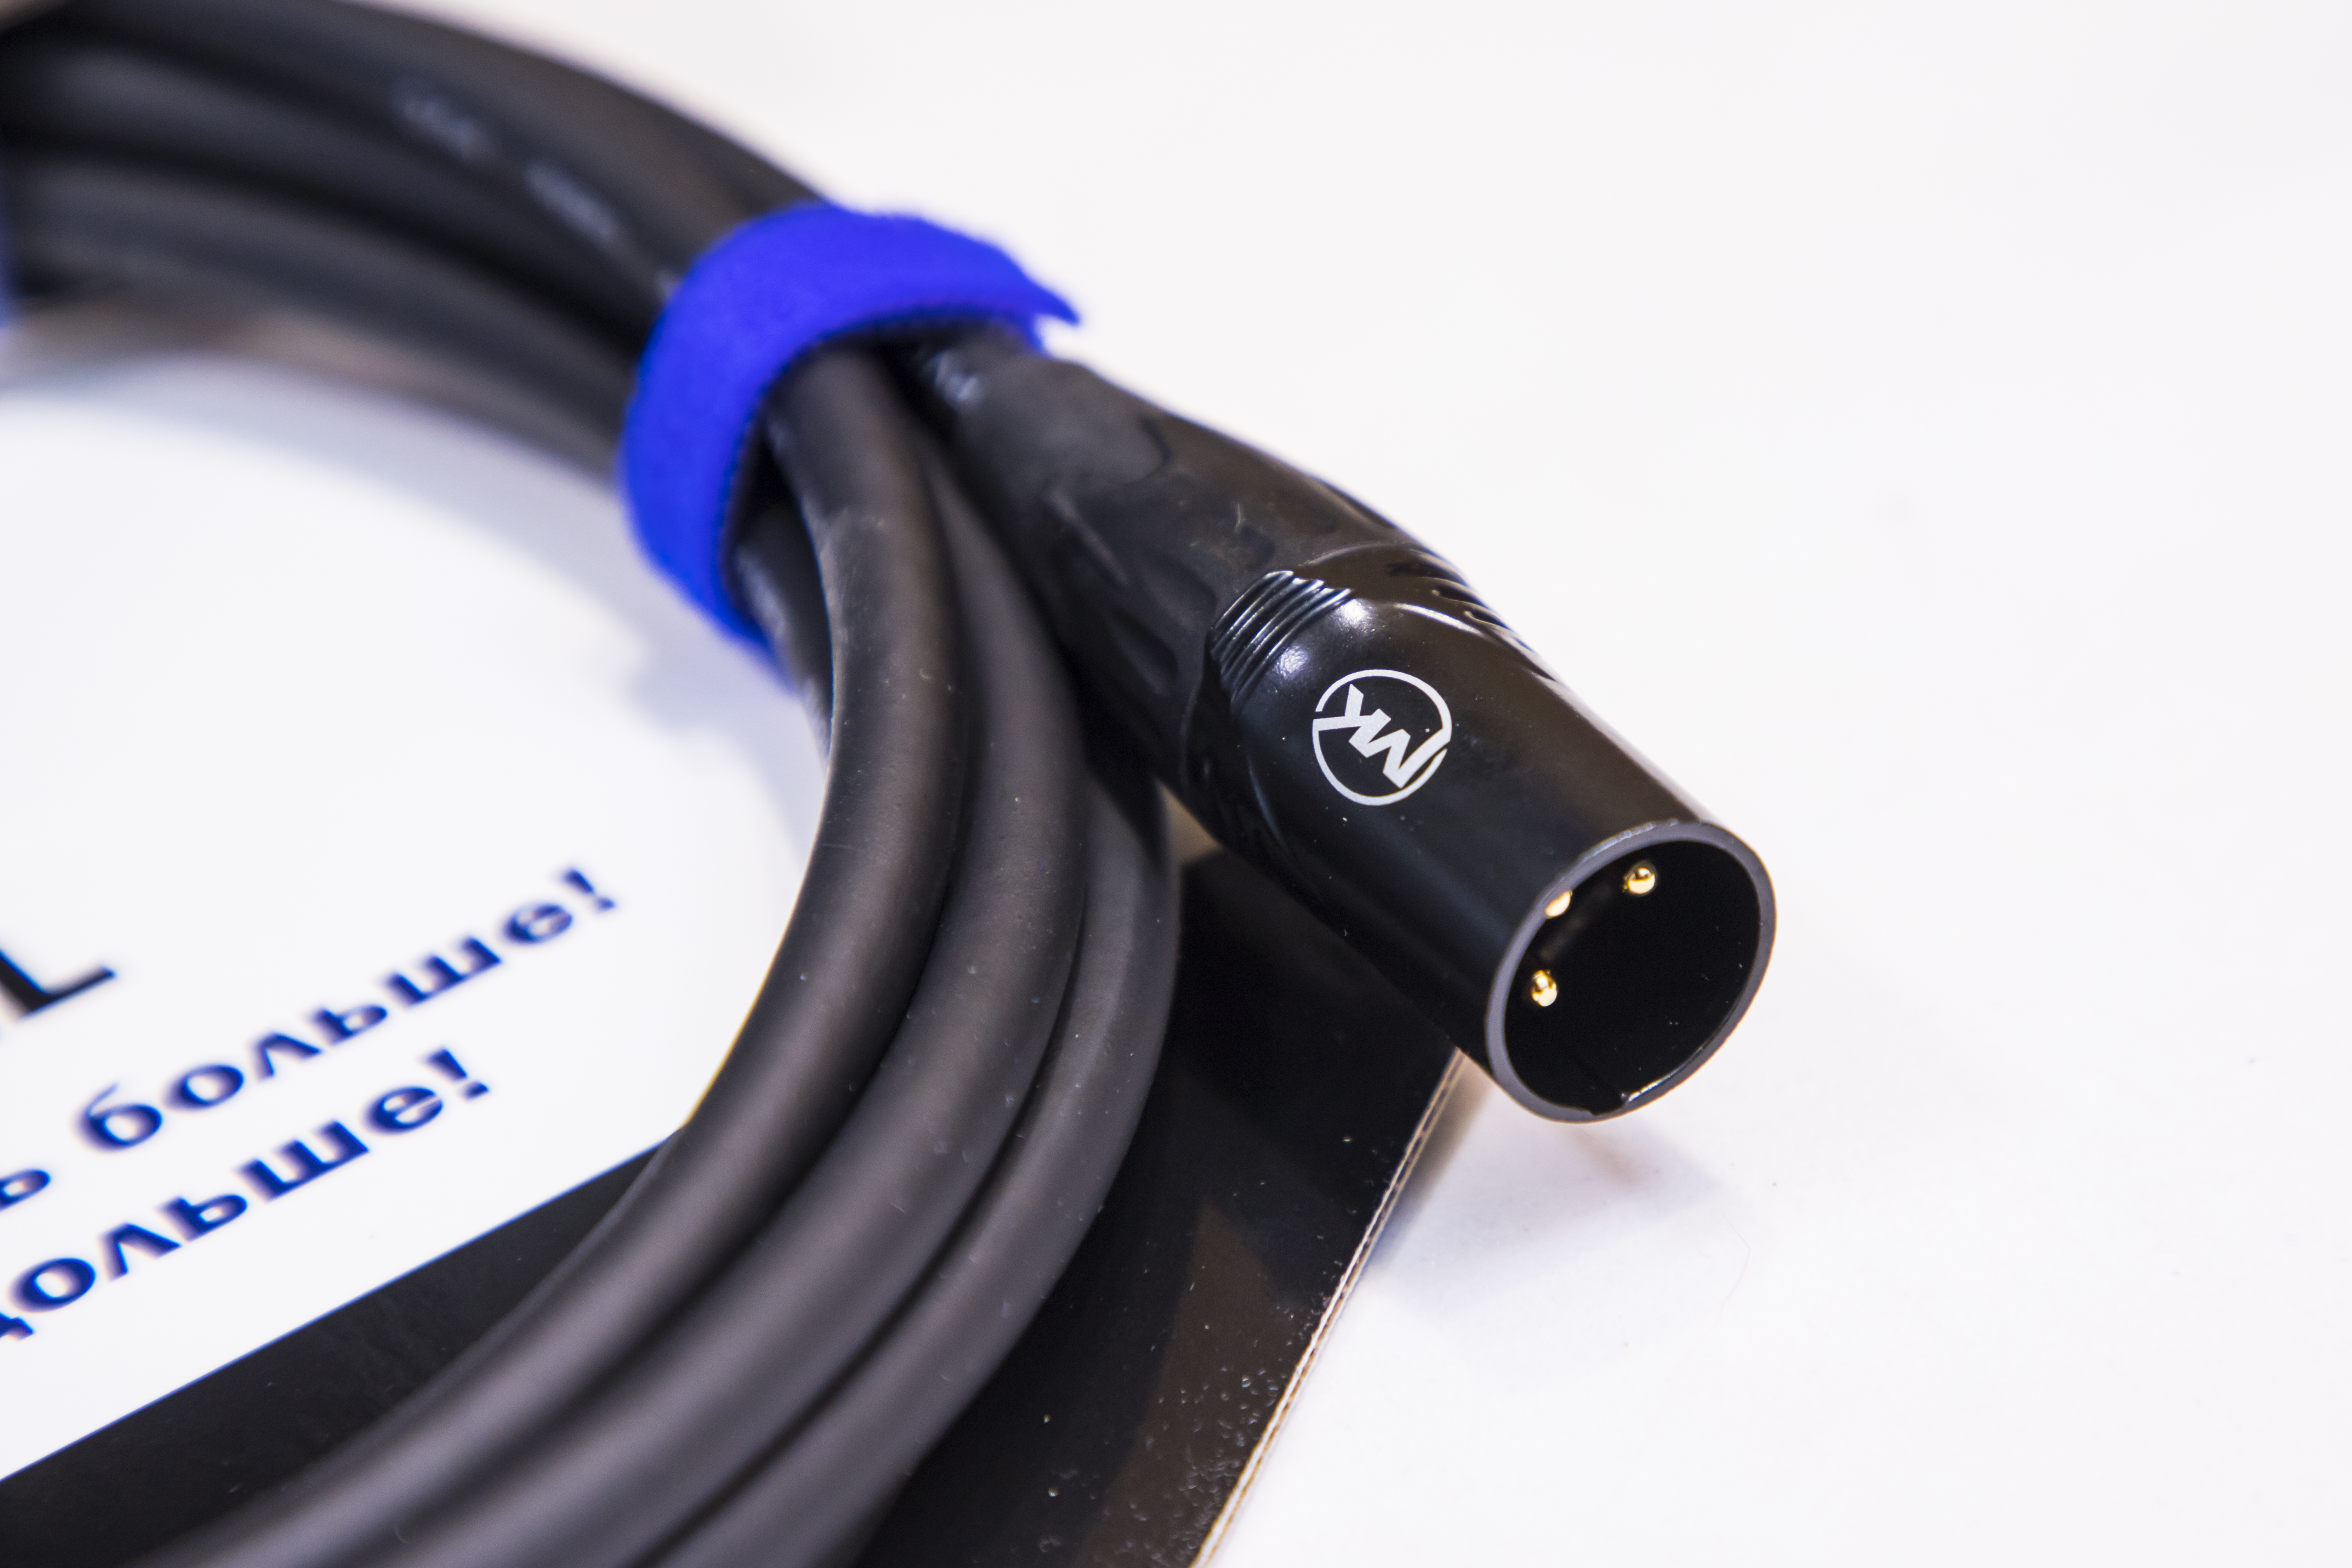 Микрофонный кабель MUZKABEL XXFMK1B - 3 метра, XLR – XLR